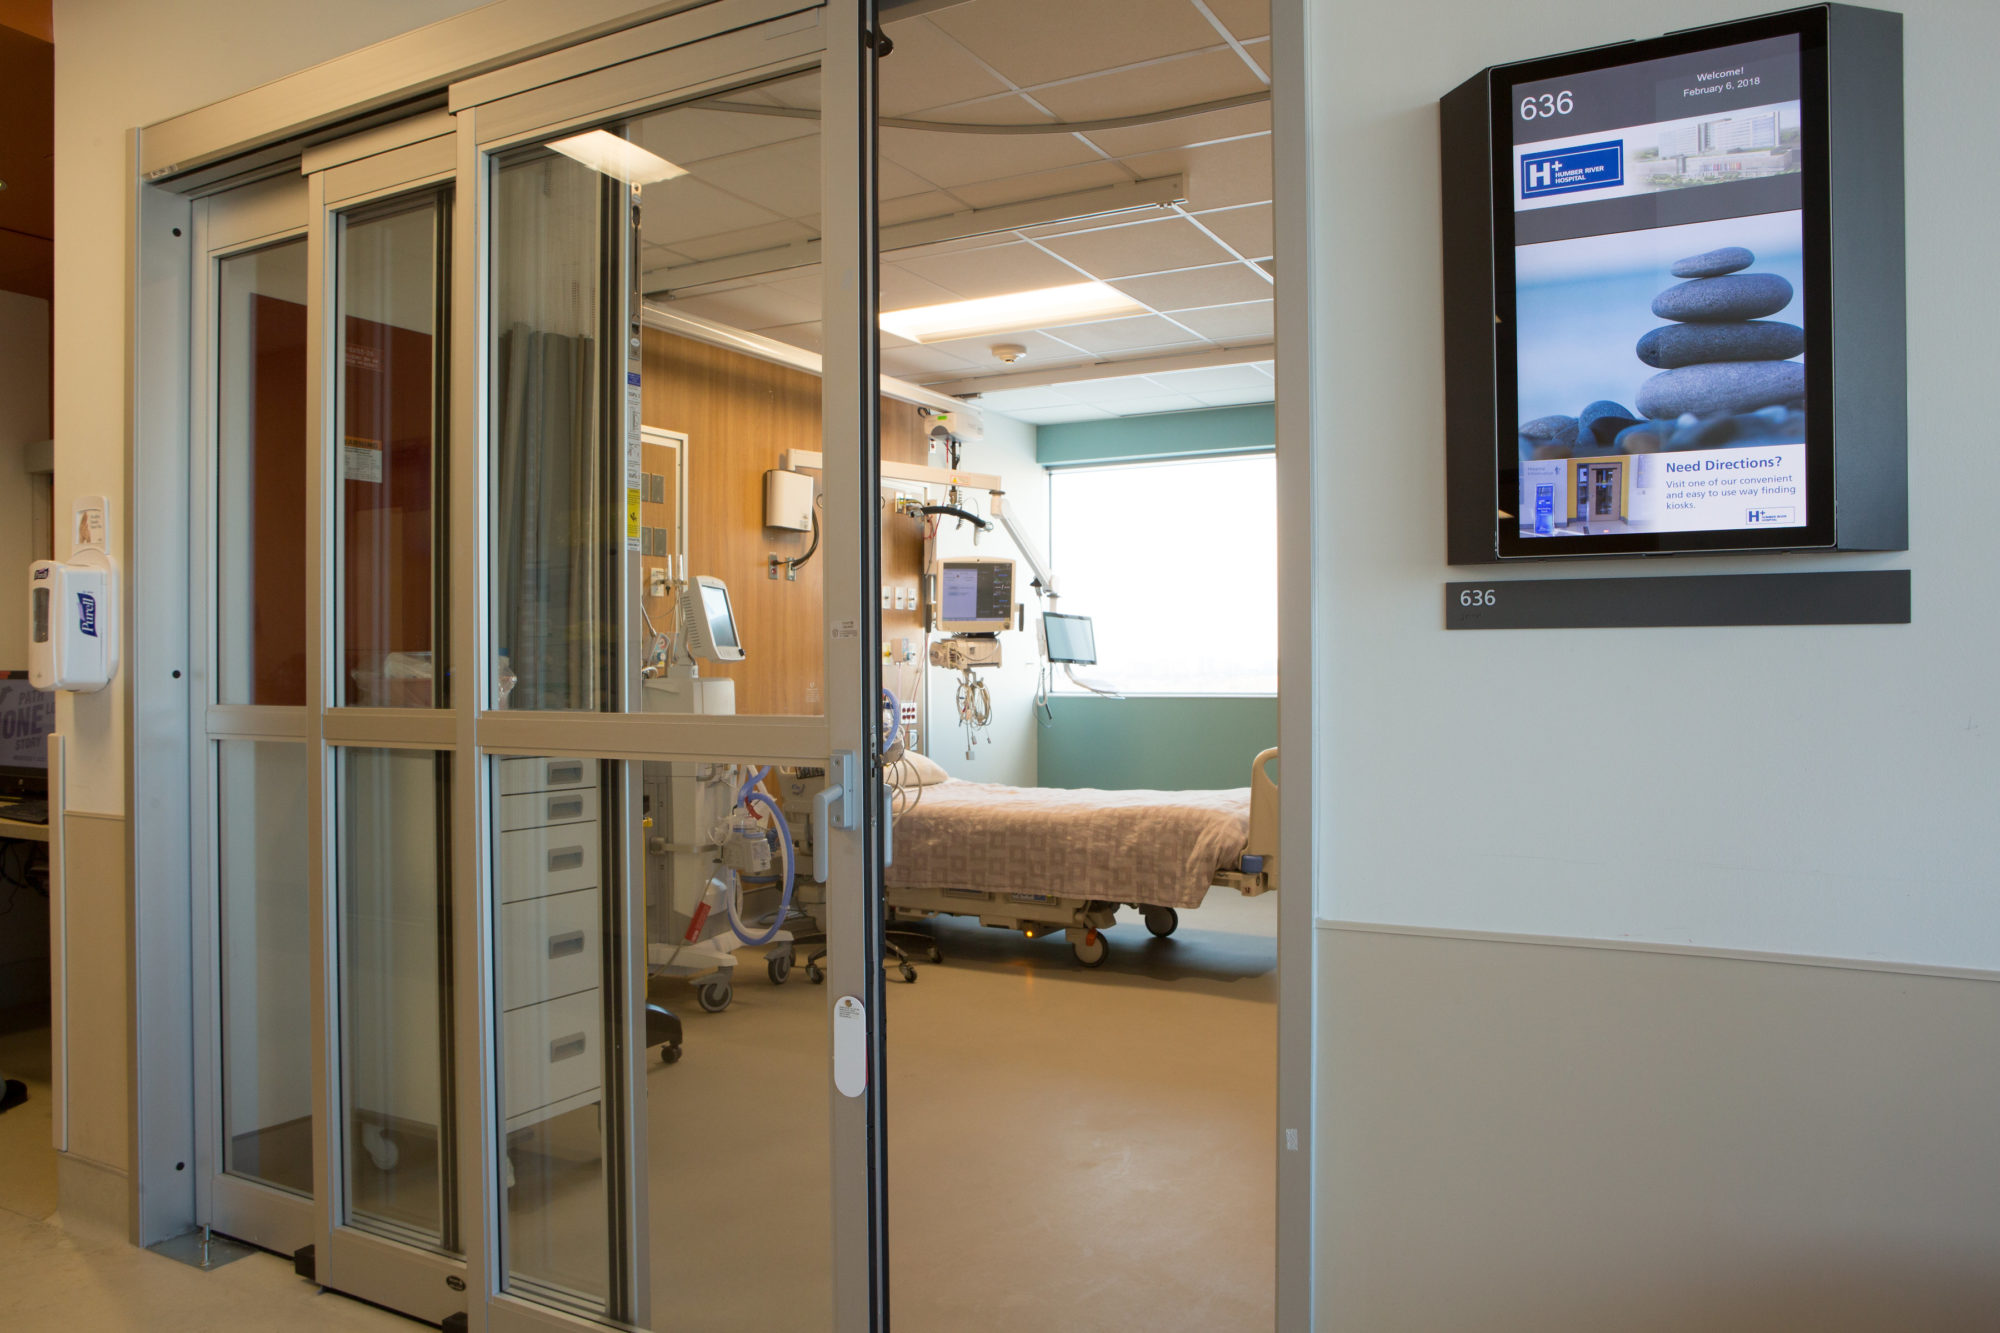 A Negative Pressure Room in the ICU: COVID-19